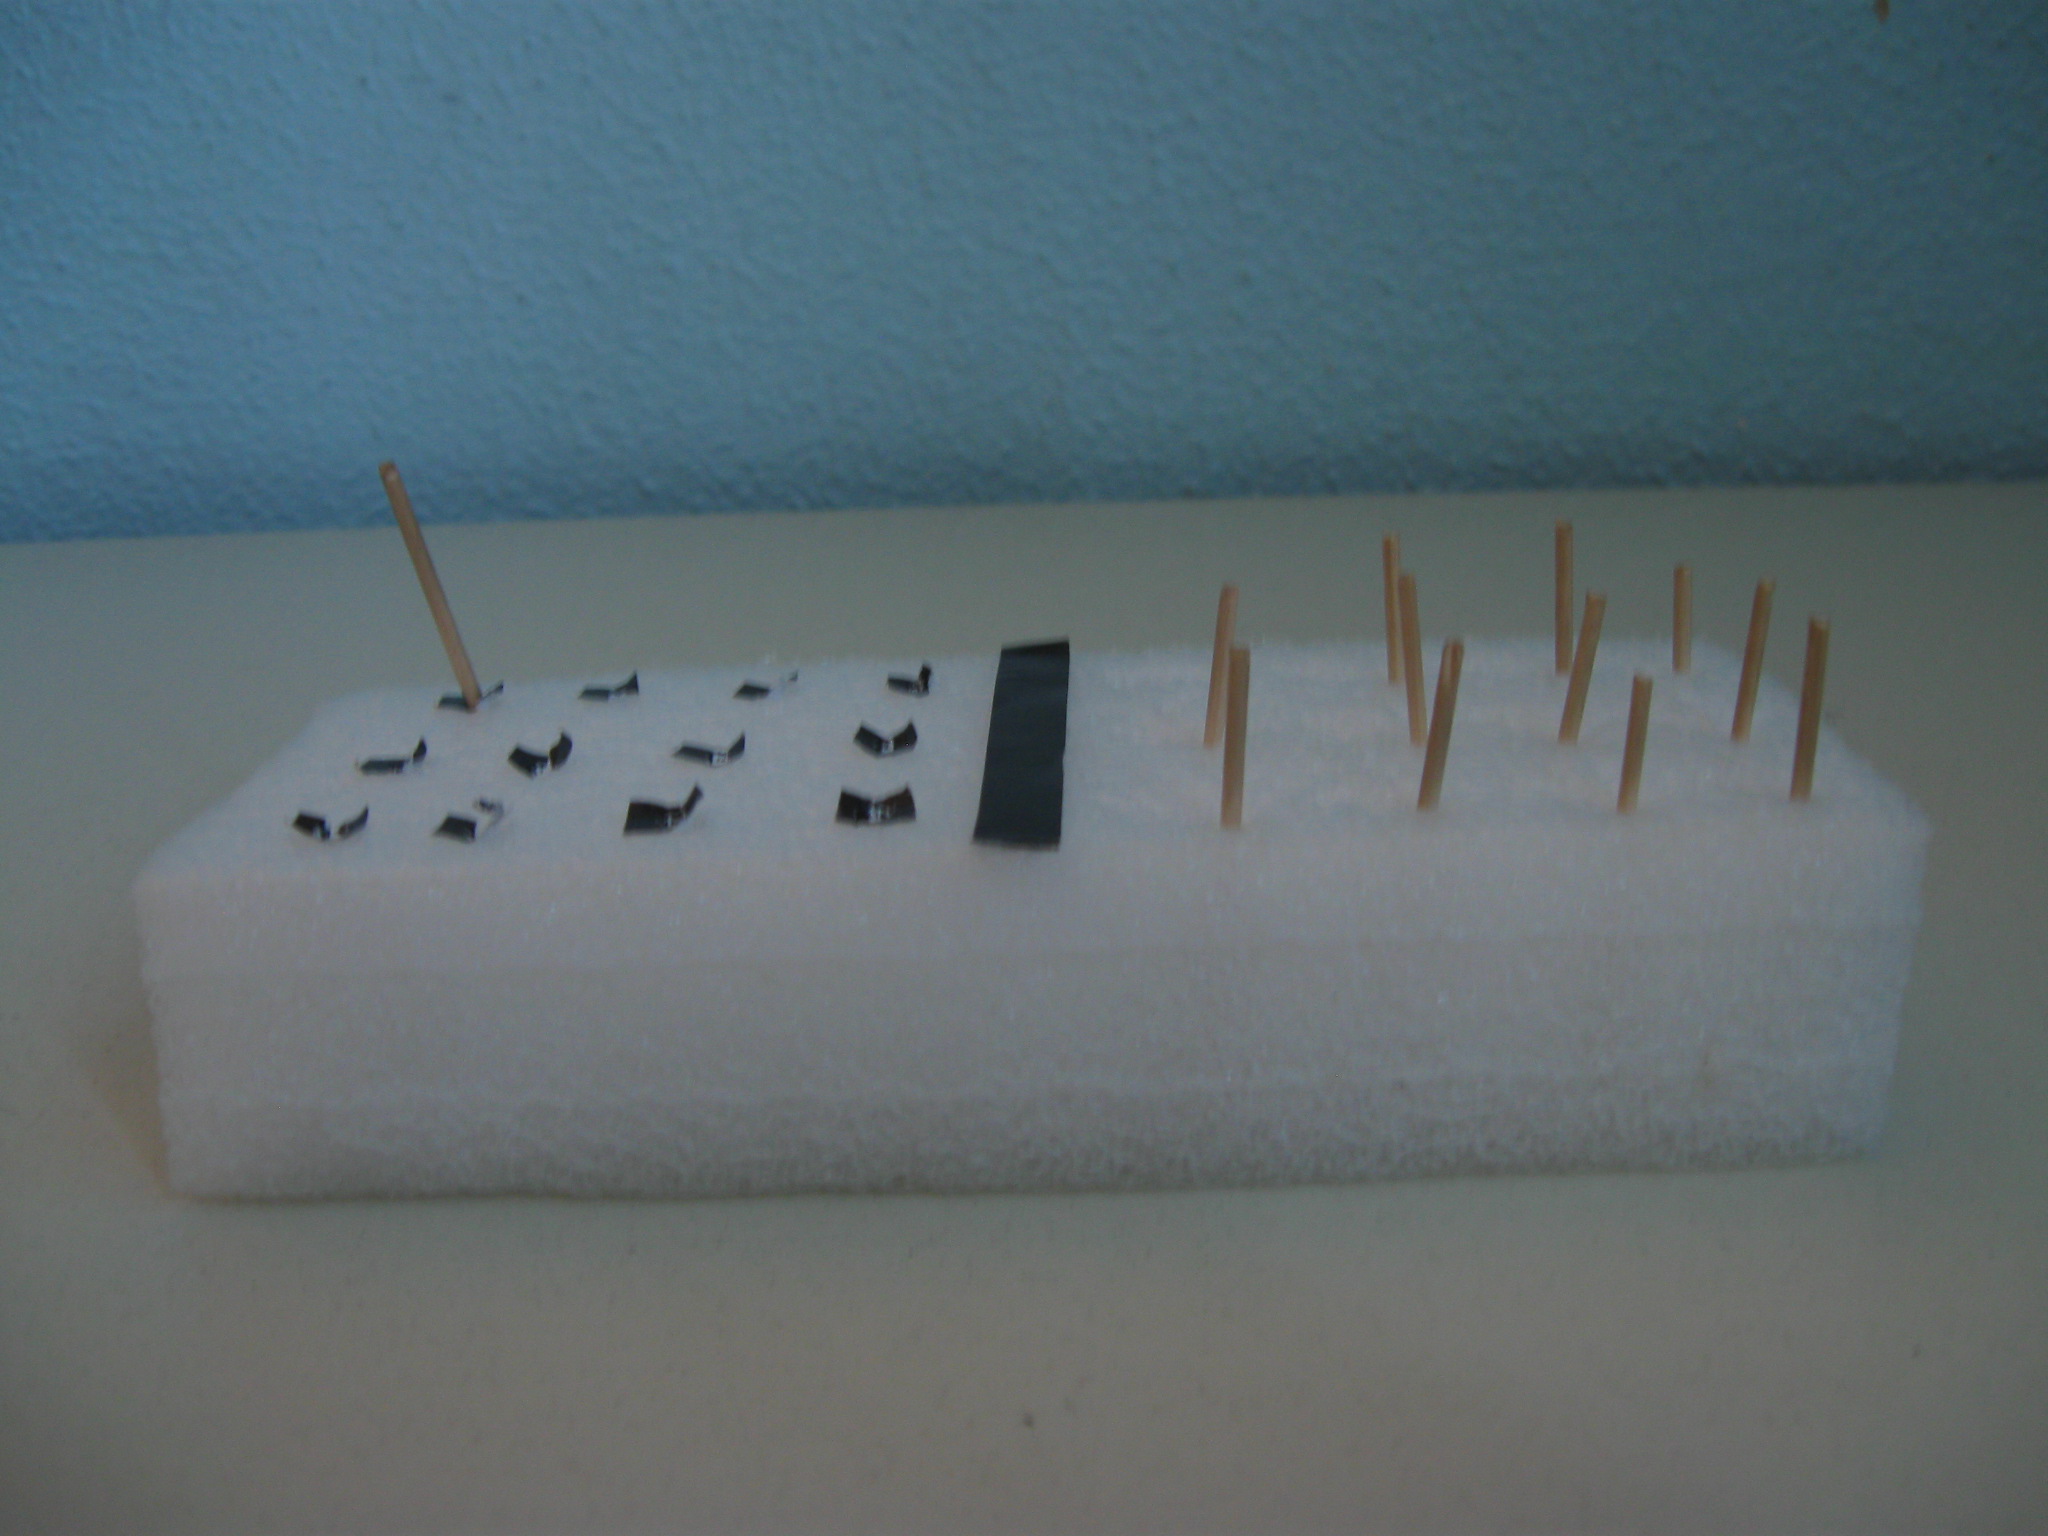 Parallelepipedo di plastica morbida alto quattro centimetri in cui sono infilati alcuni stuzzicadenti (a destra). A sinistra vi sono dei quadratini neri dove infilare gli stuzzicadenti.